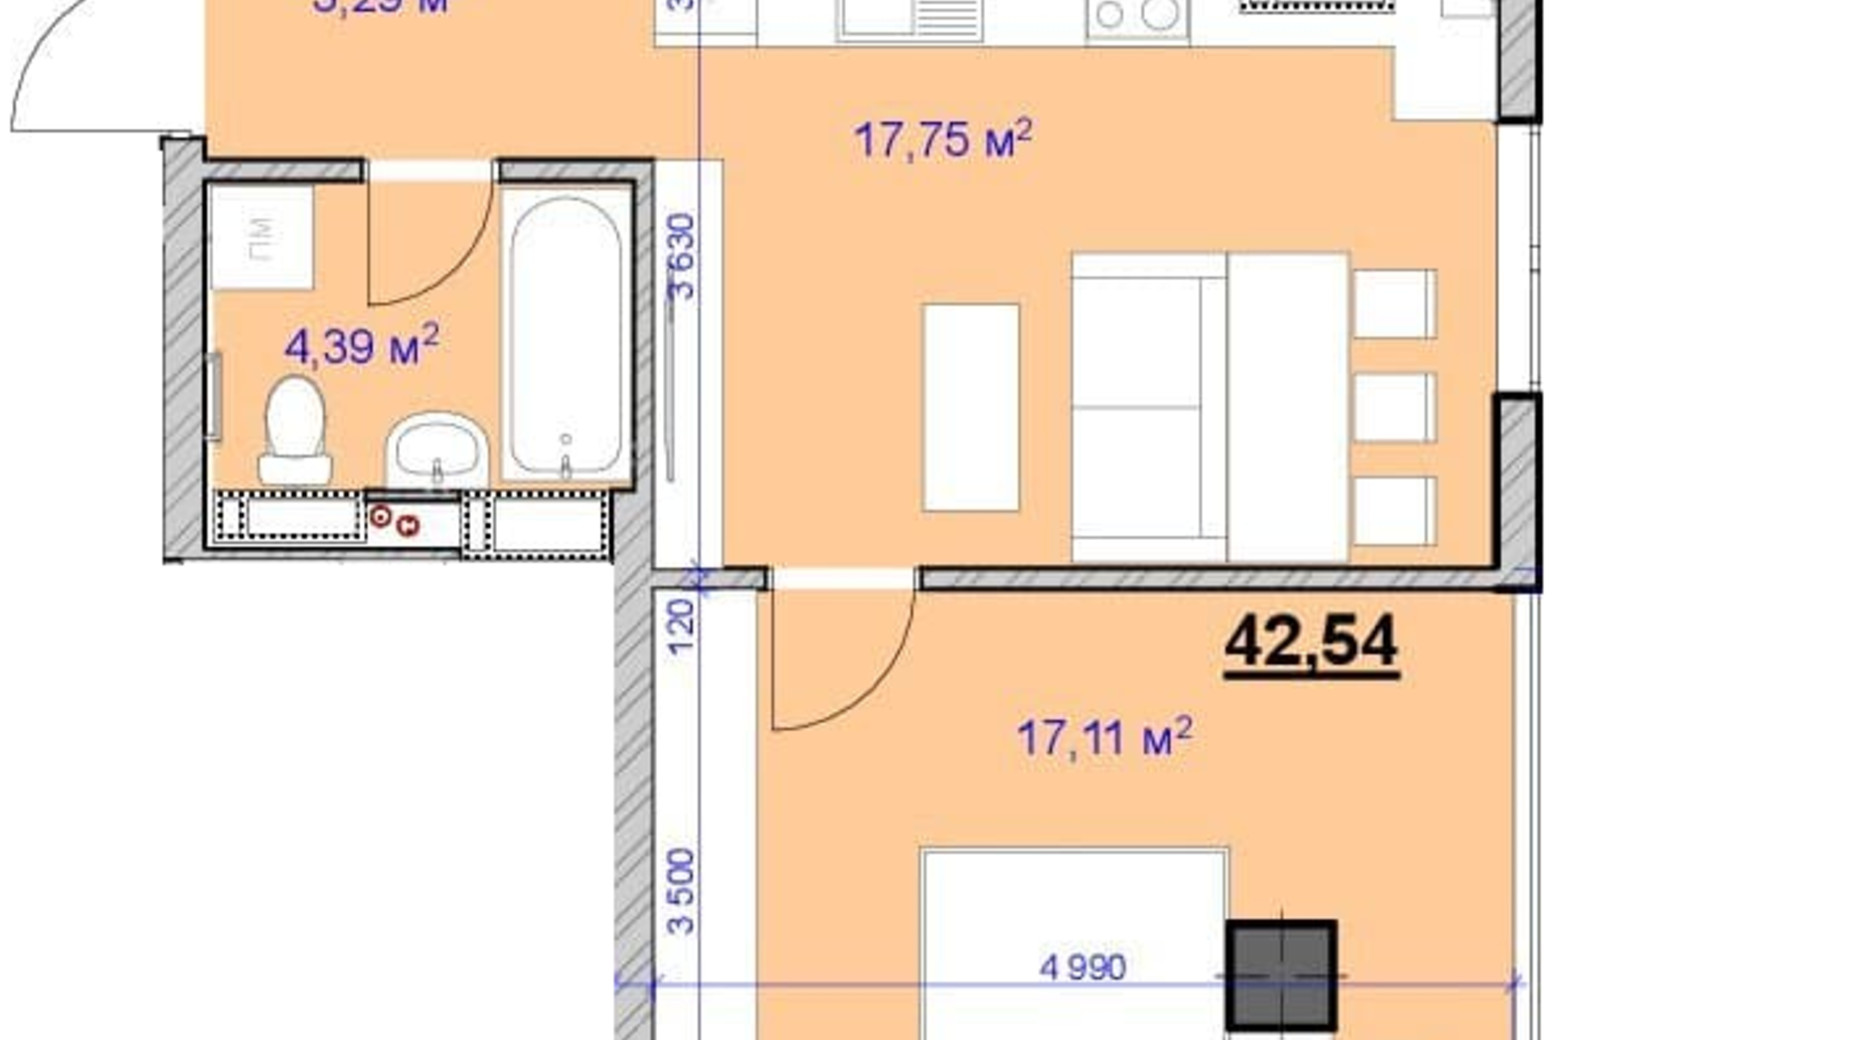 Планировка 1-комнатной квартиры в ЖК Grand Hall 42 м², фото 594909